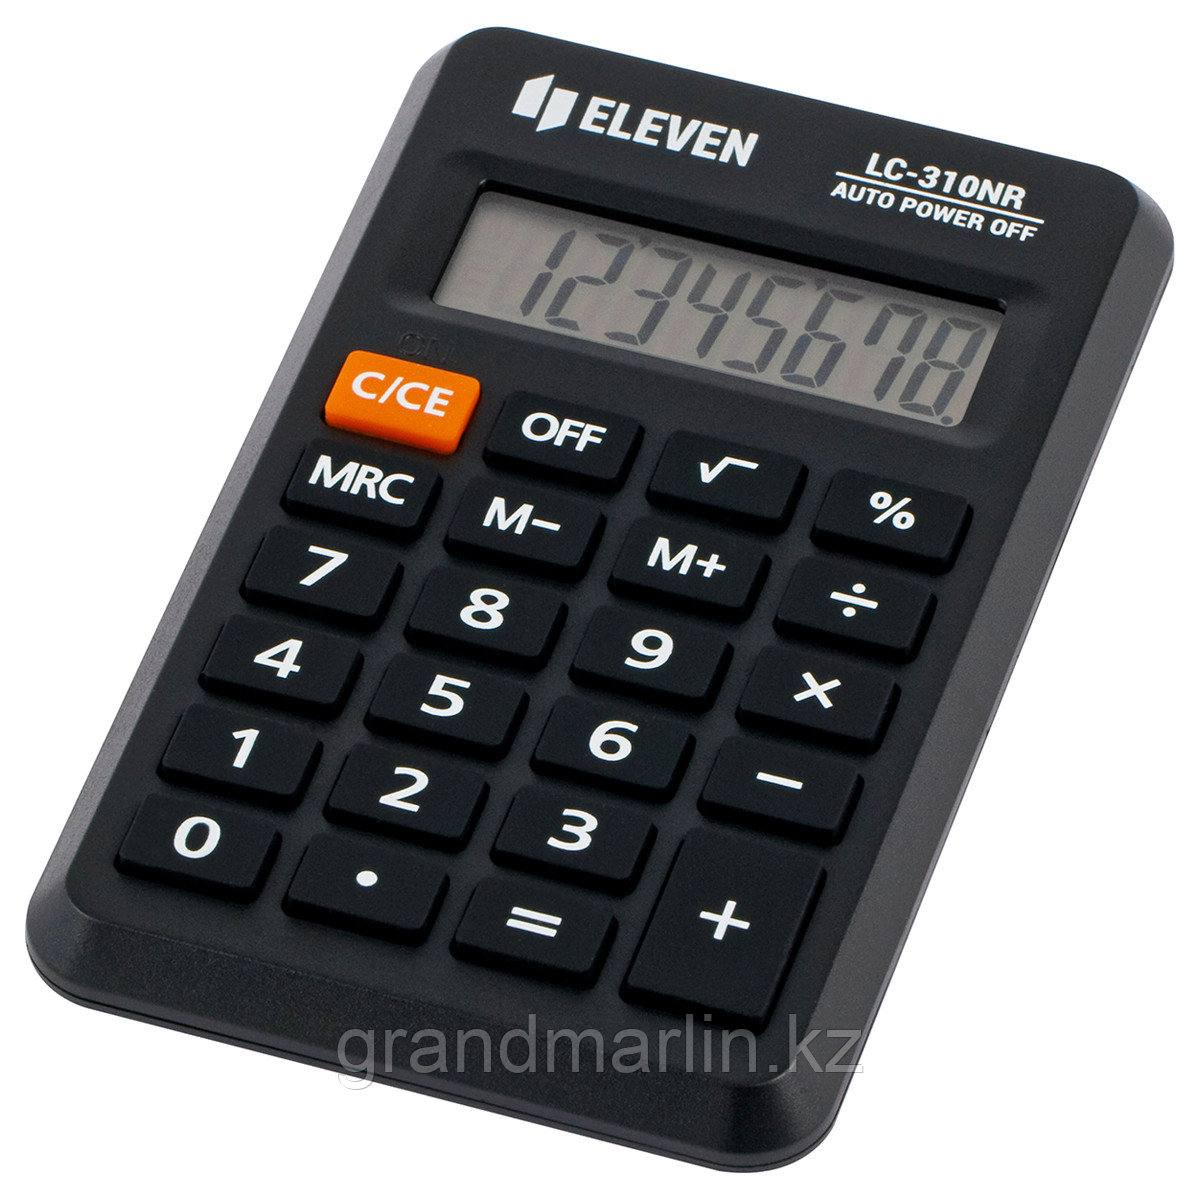 Калькулятор карманный Citizen LC-310NR, 8 разр., питание от батарейки, 69*114*14мм, черный